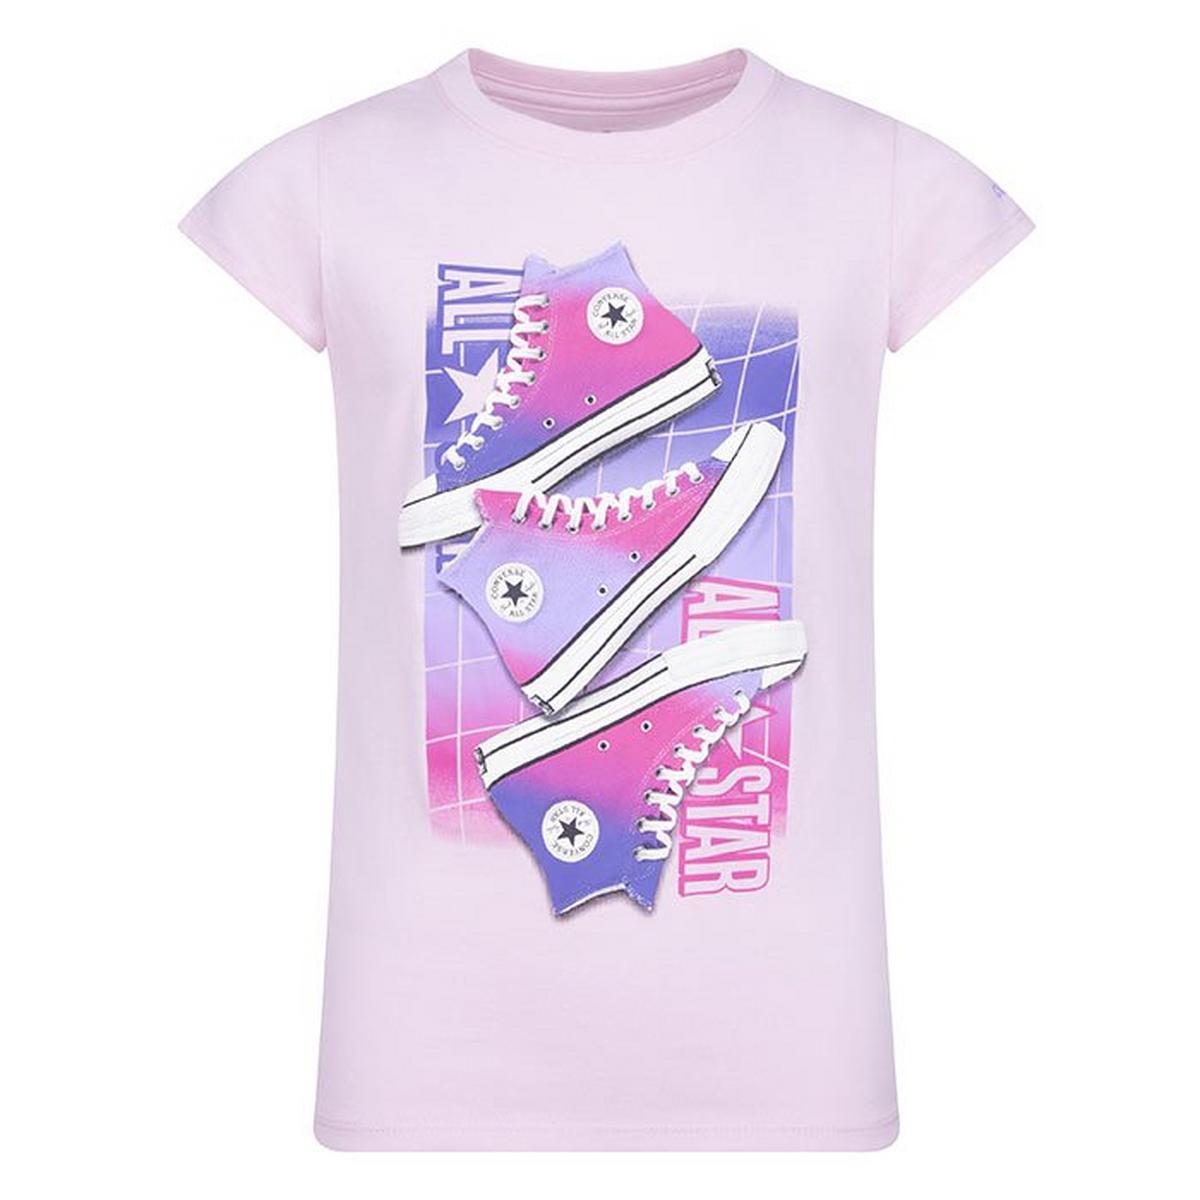 T-shirt Chuck Taylor Shoe Graphic pour filles juniors [8-16]